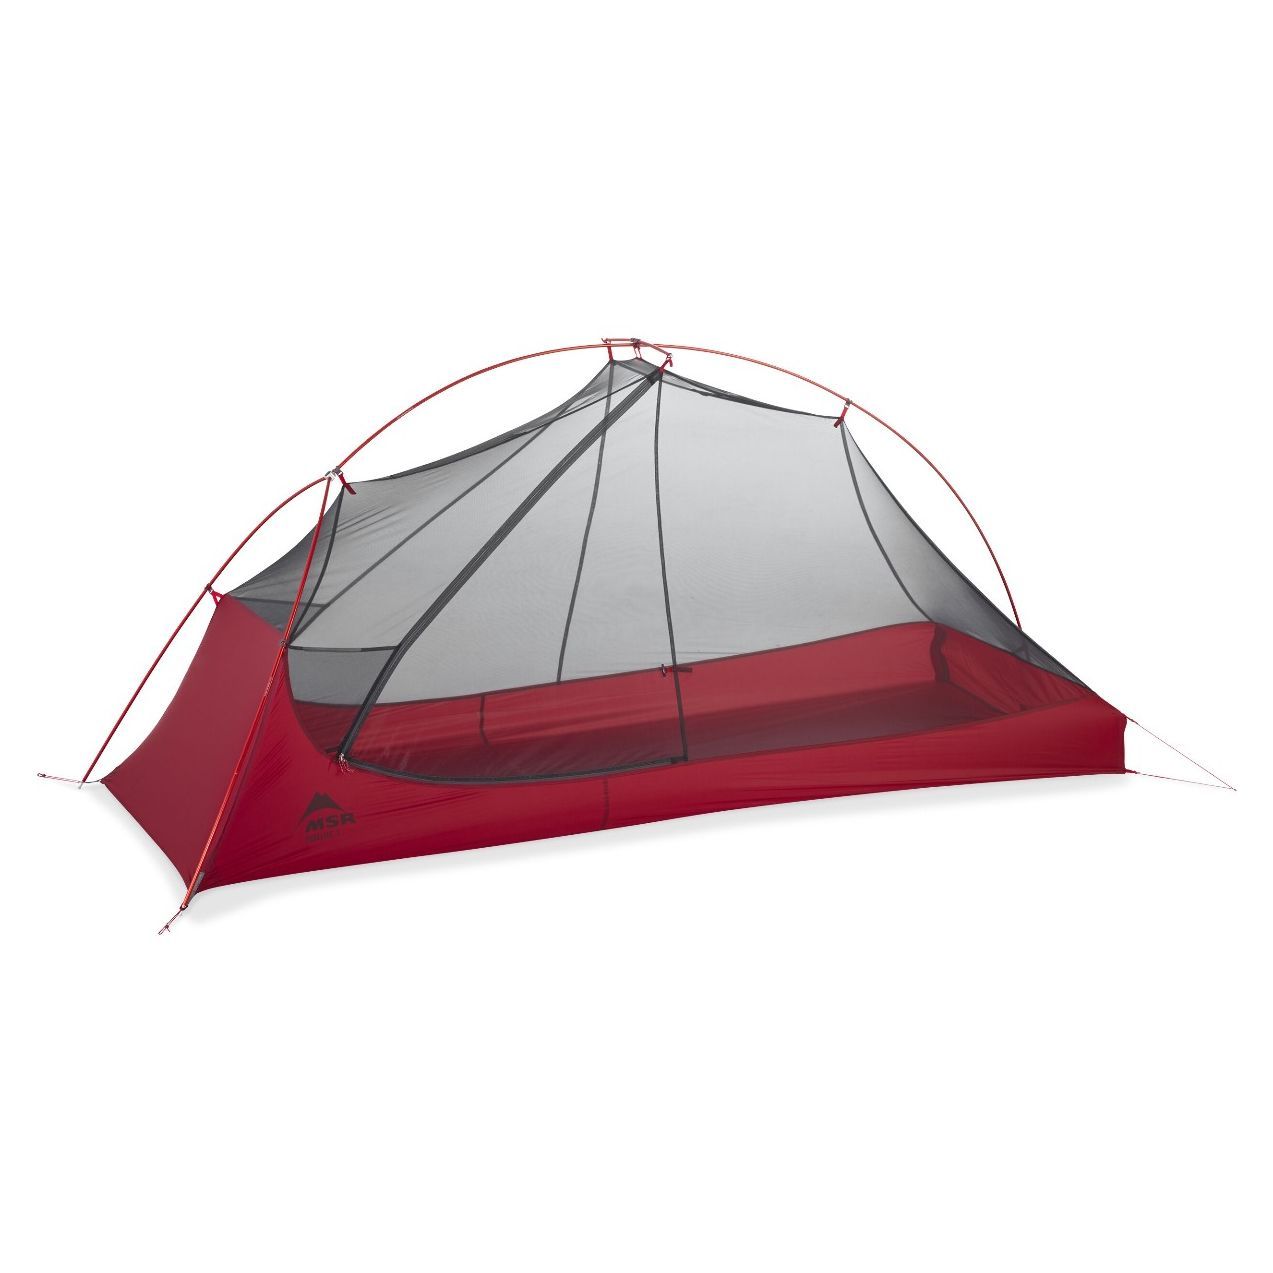 Freelite™ 1 MSR tent | Cumulus® outdoor